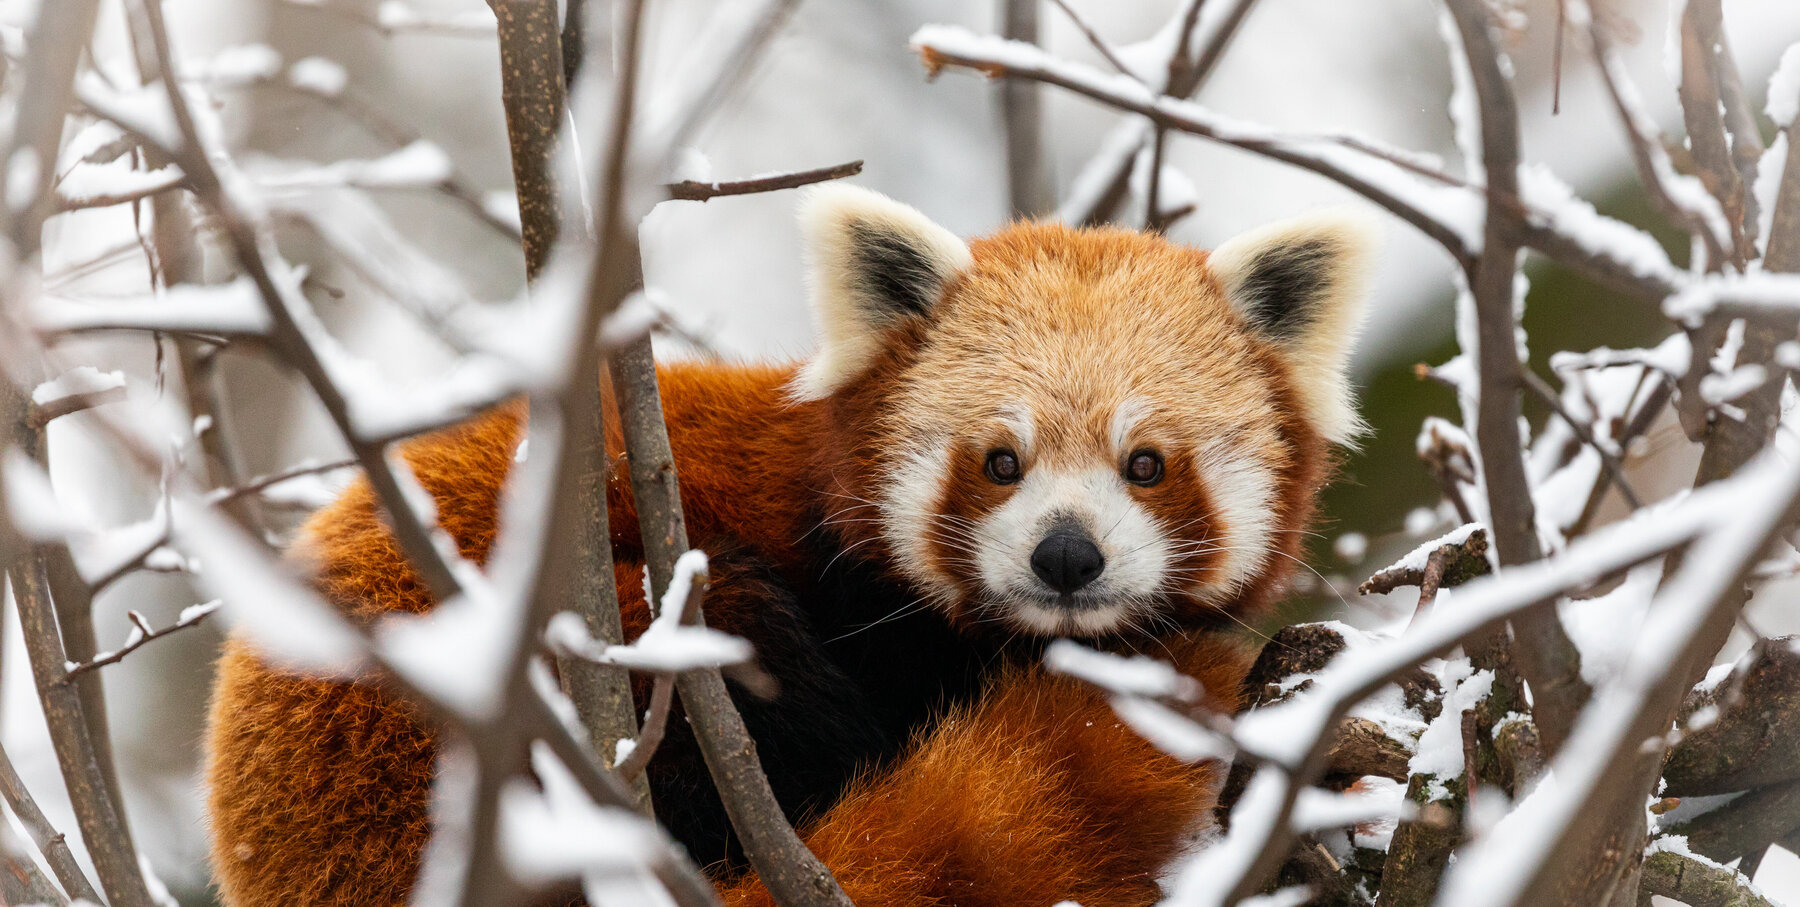 Zoo von Cincinatti: Rote Pandas toben im Schnee - Gesellschaft - FAZ